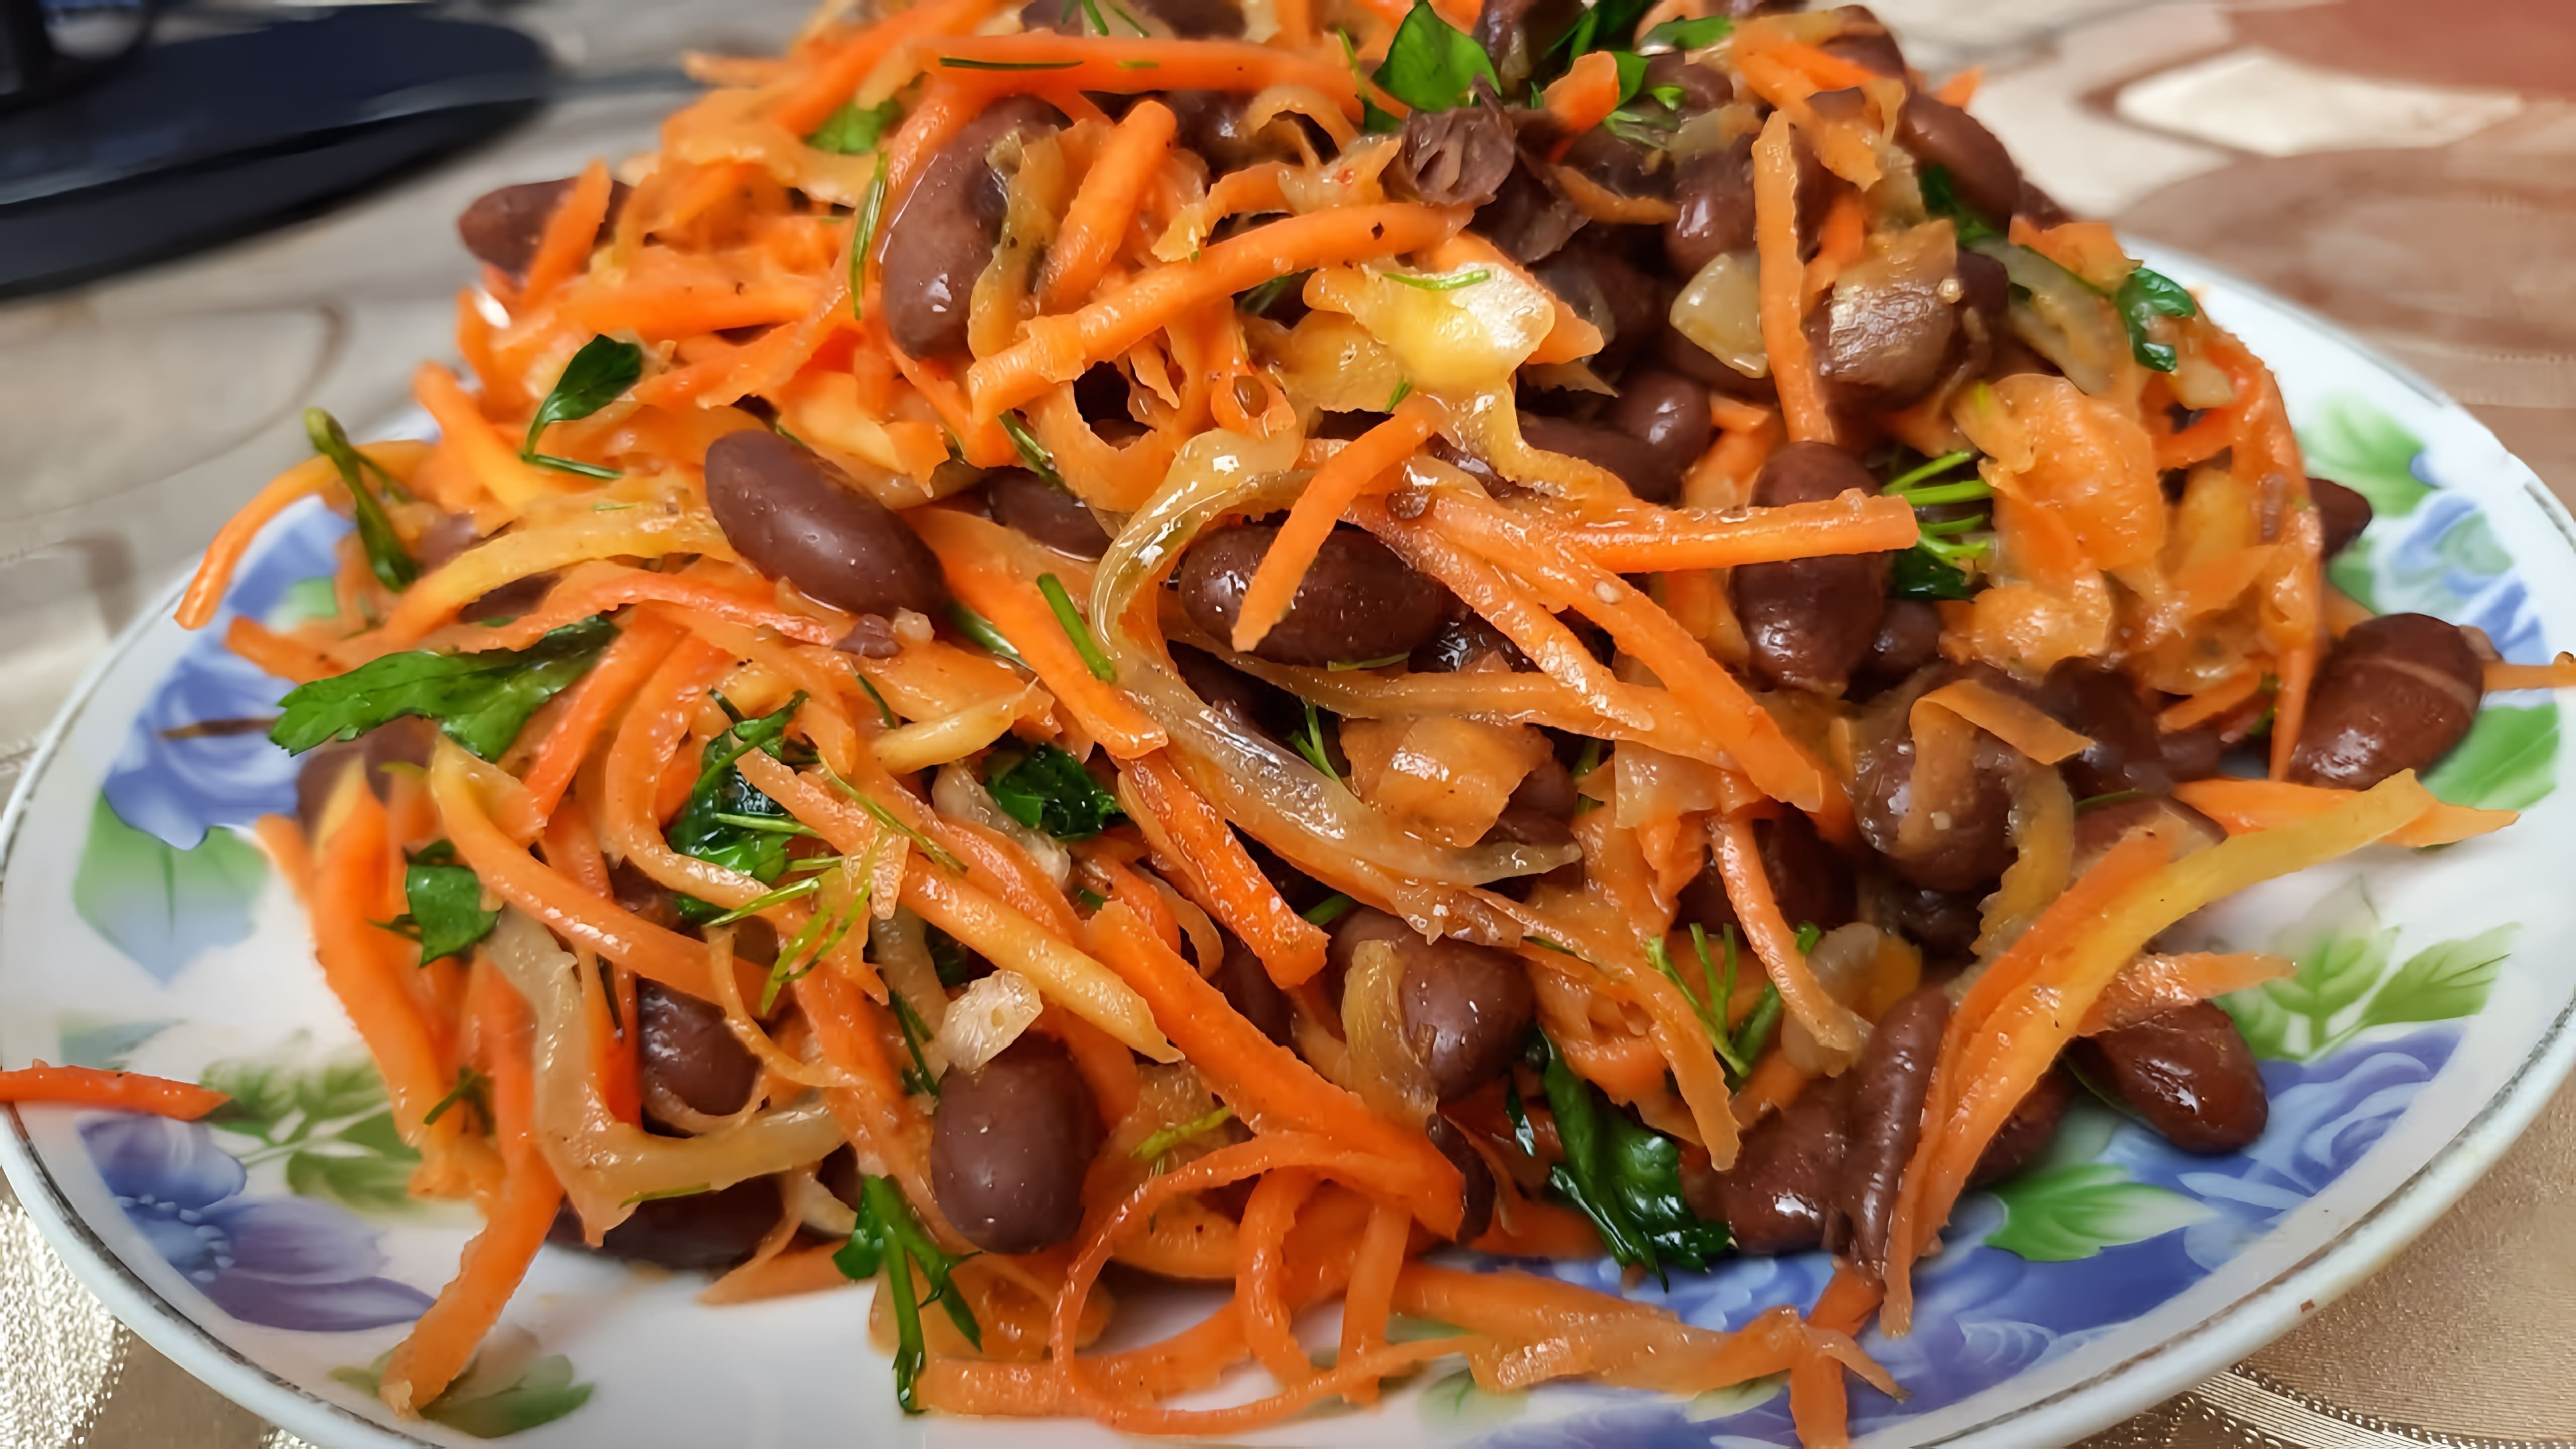 Салат с красной фасолью по-корейски - это вкусное и полезное блюдо, которое можно приготовить в домашних условиях